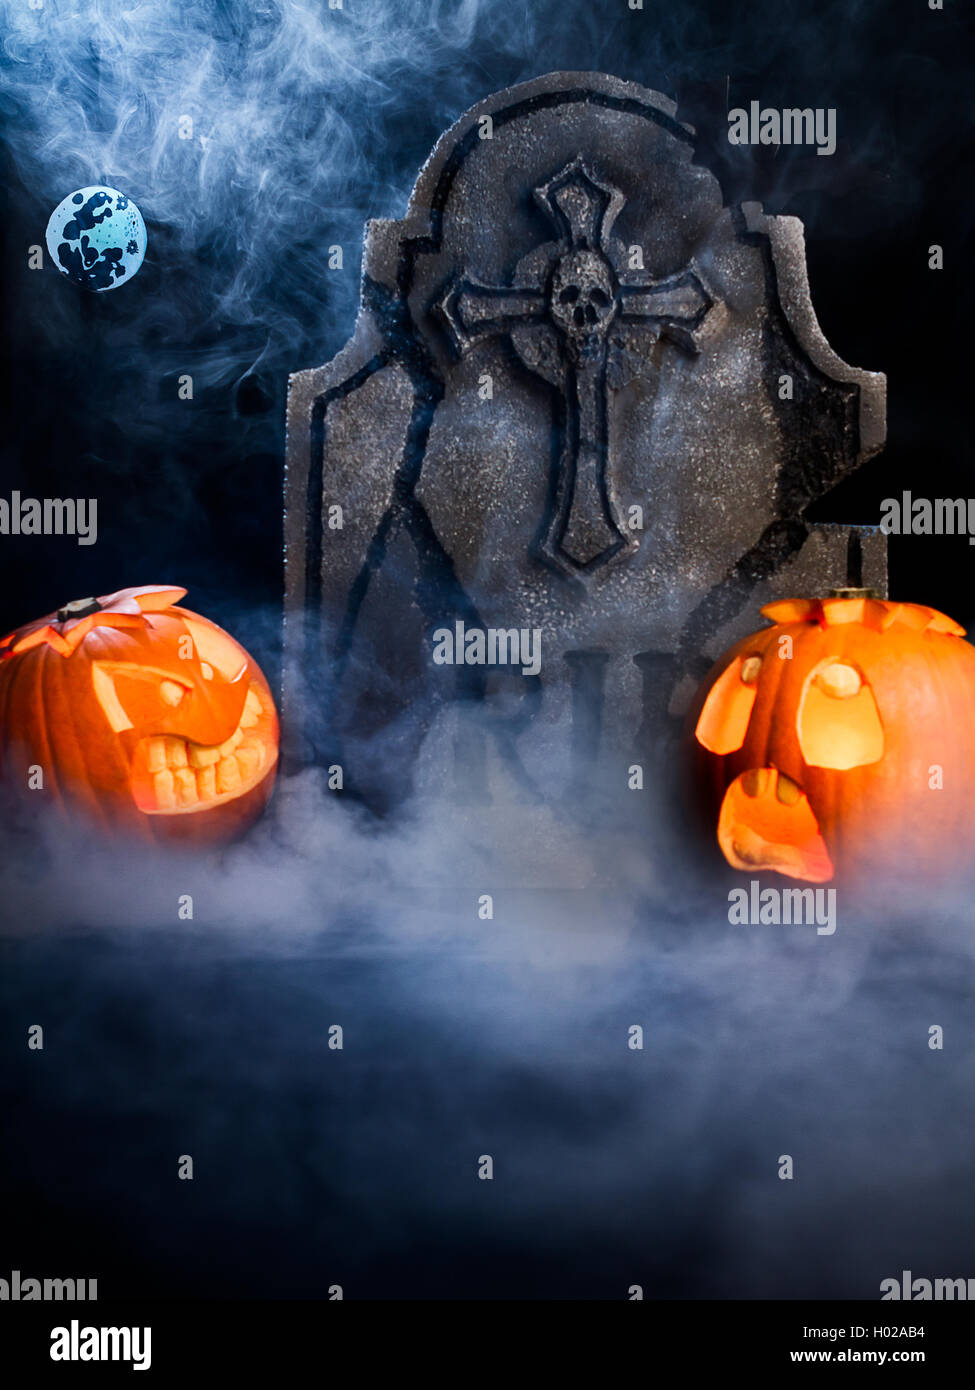 Wütend das Gesicht und erschrocken angesichts des Halloween Kürbisse mit Mond, Grabstein und bat auf Misty dunklen Hintergrund. Stockfoto